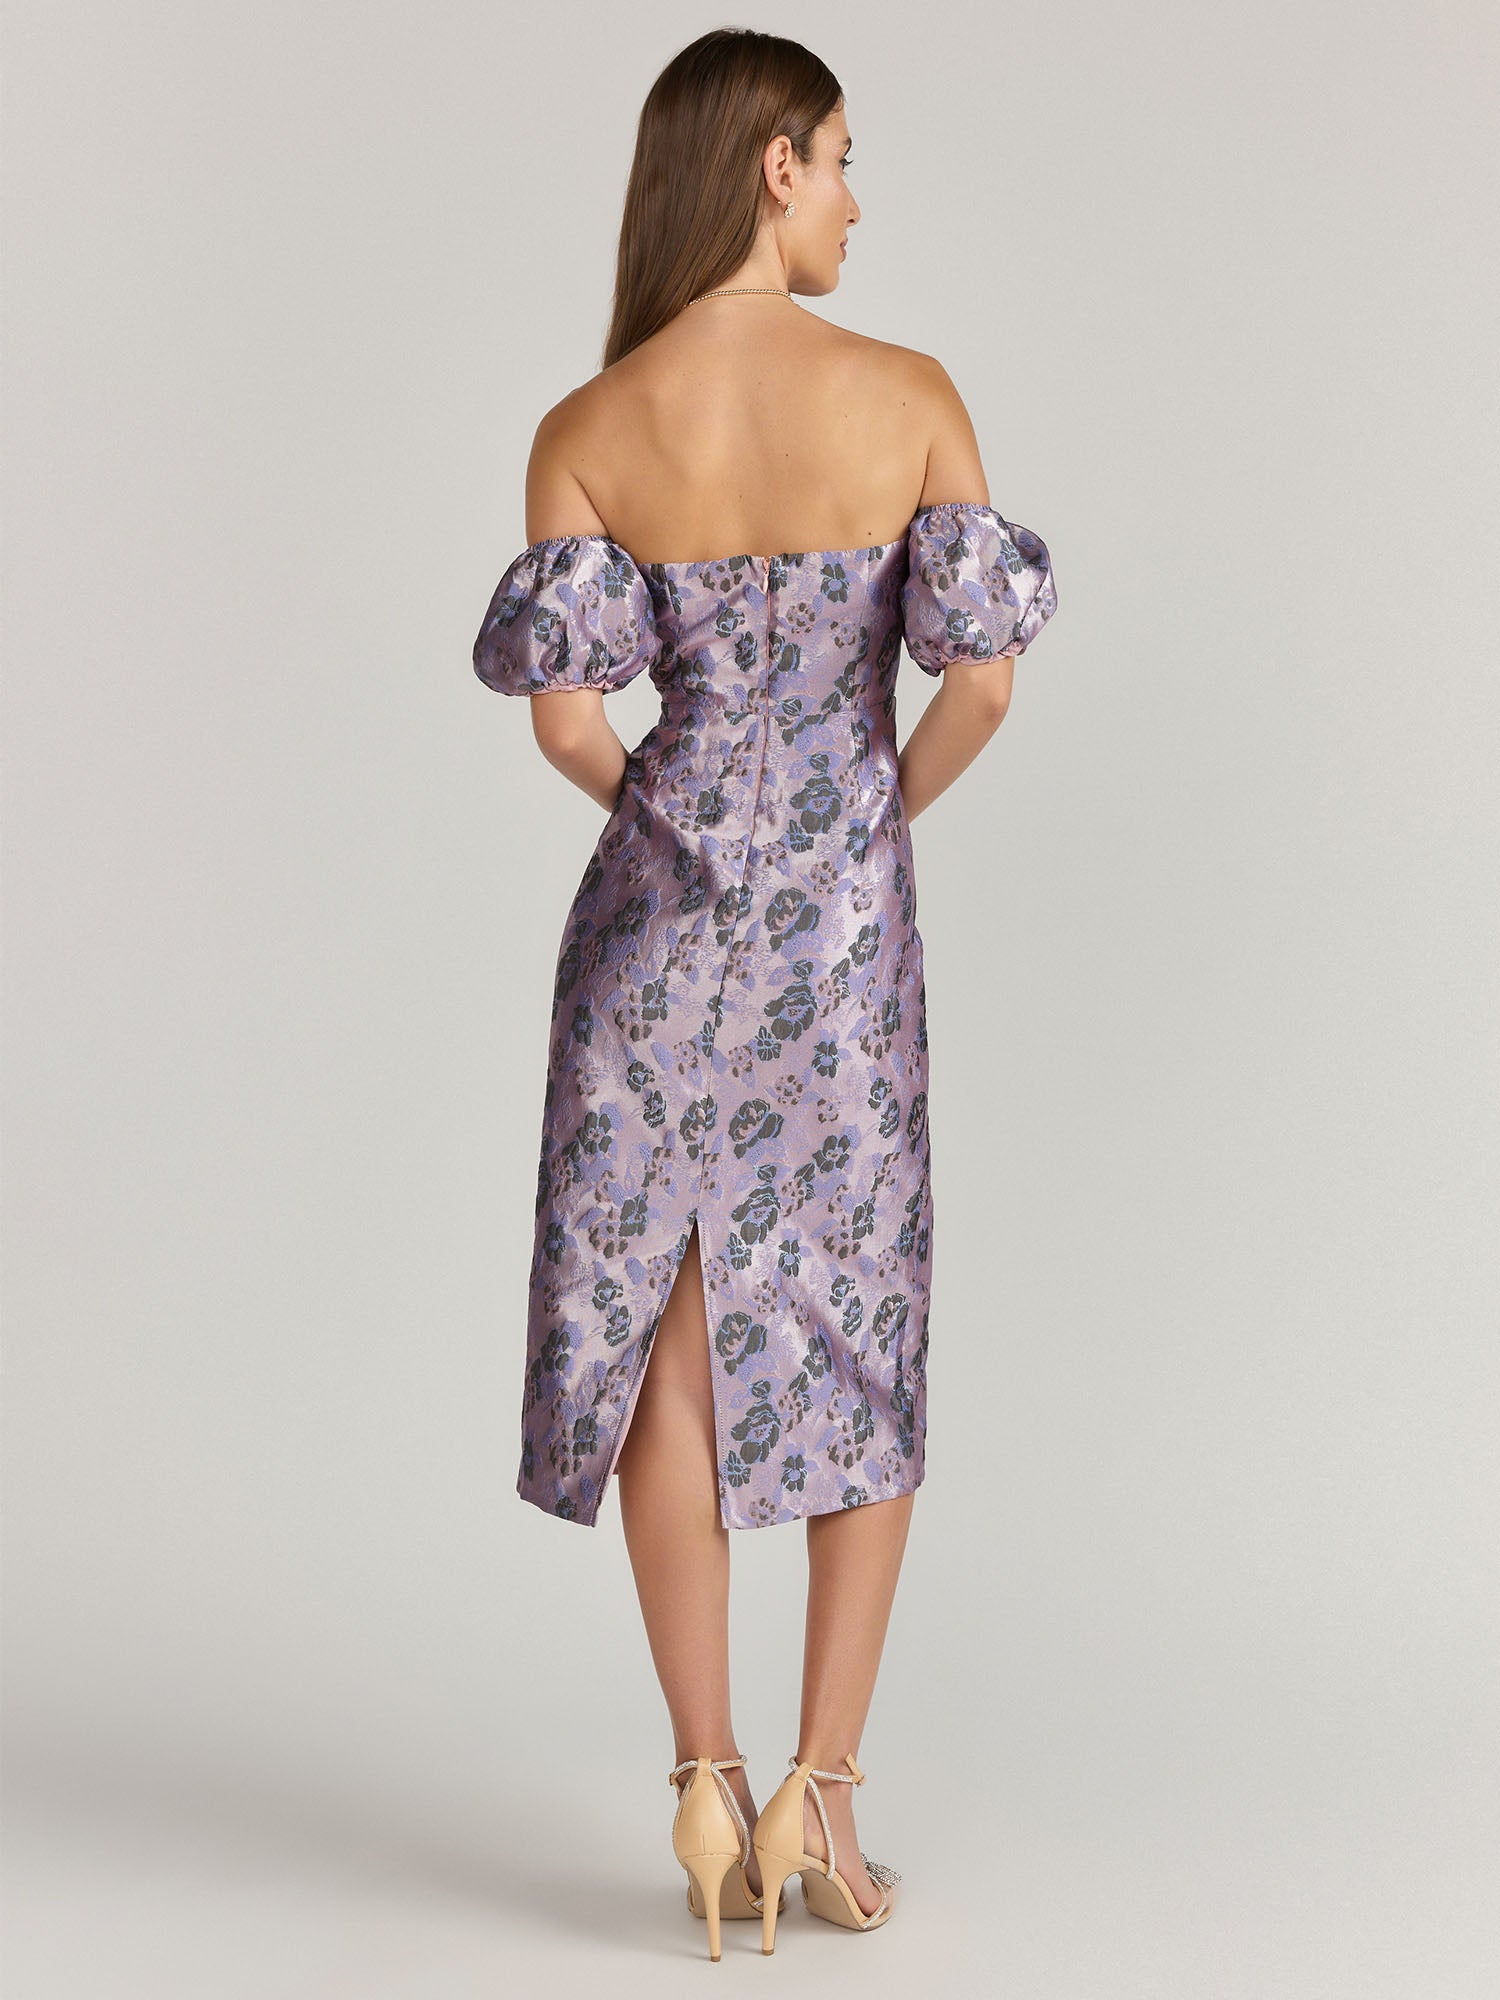 Lena Off-The-Shoulder Brocade Floral Dress - Brands We Love | NY&Co